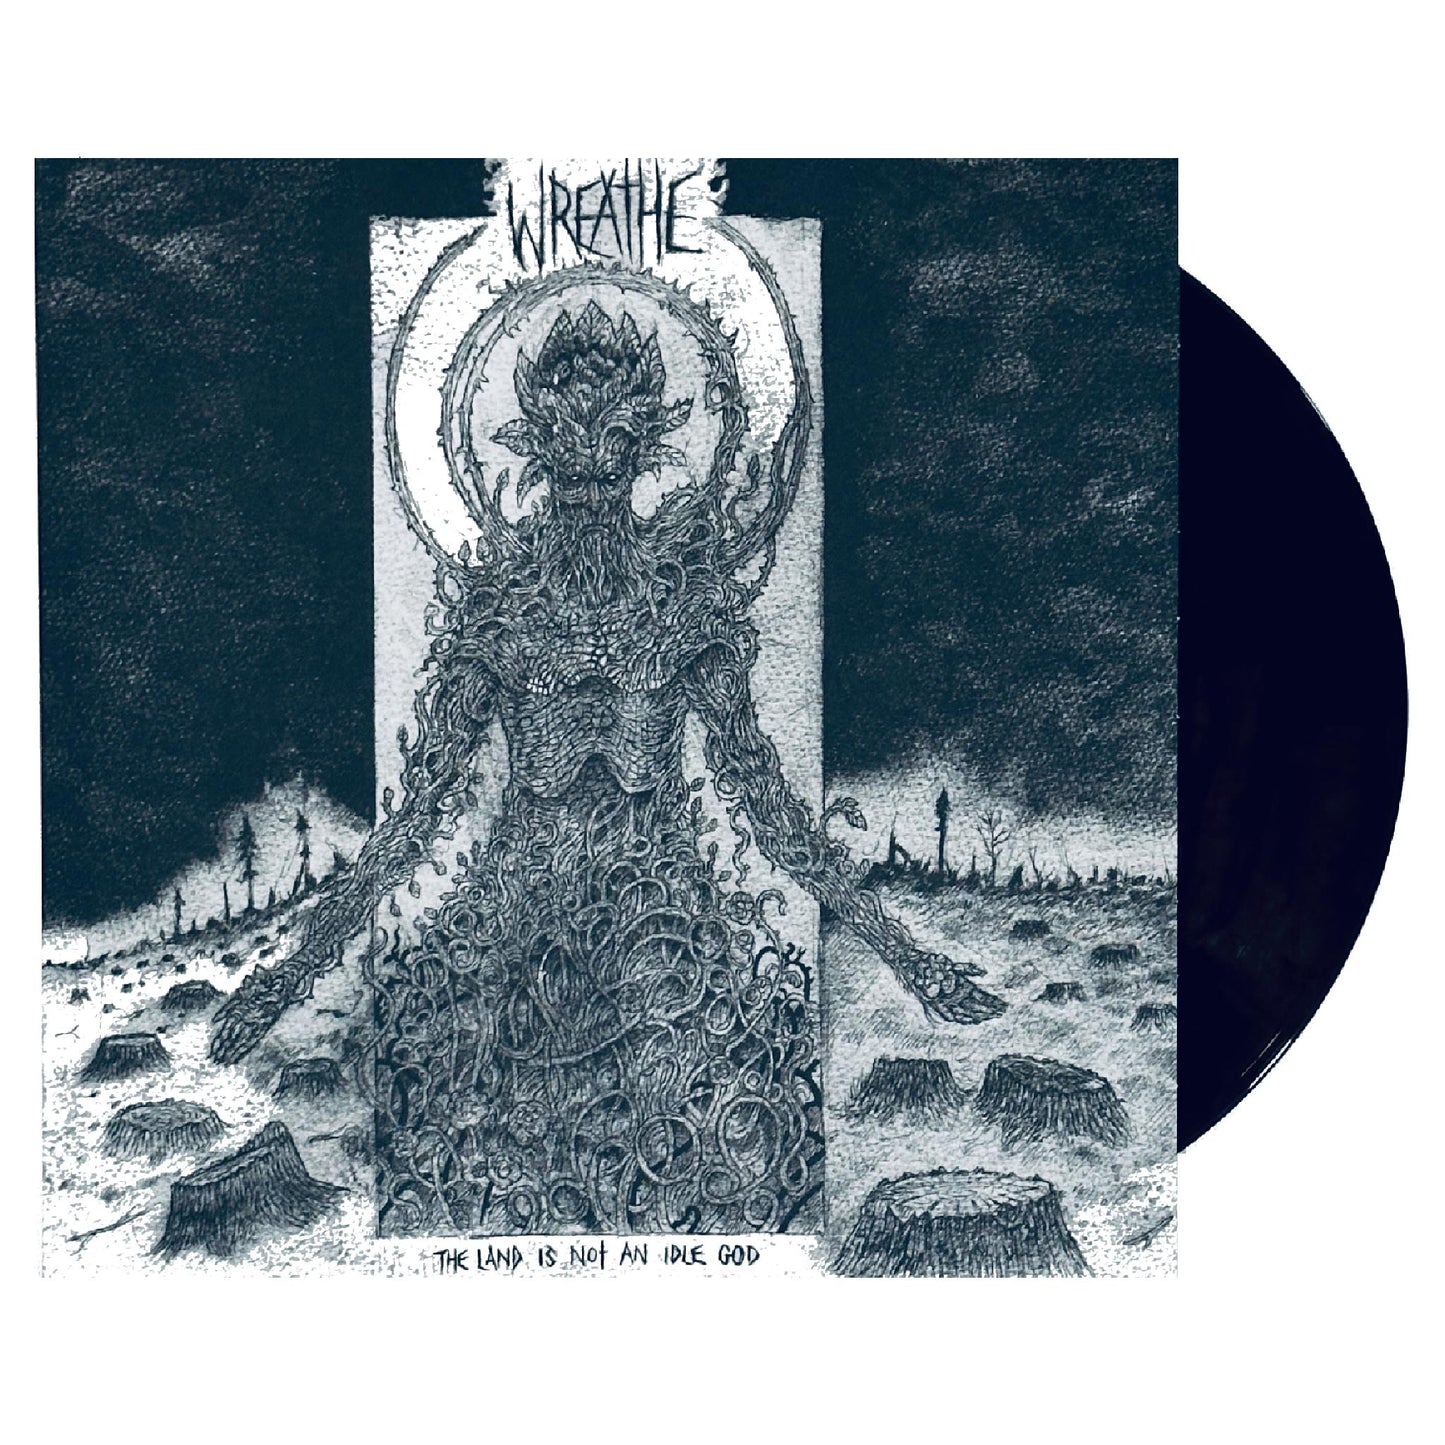 Wreathe - The Land is Not An Idle God LP (color vinyl)